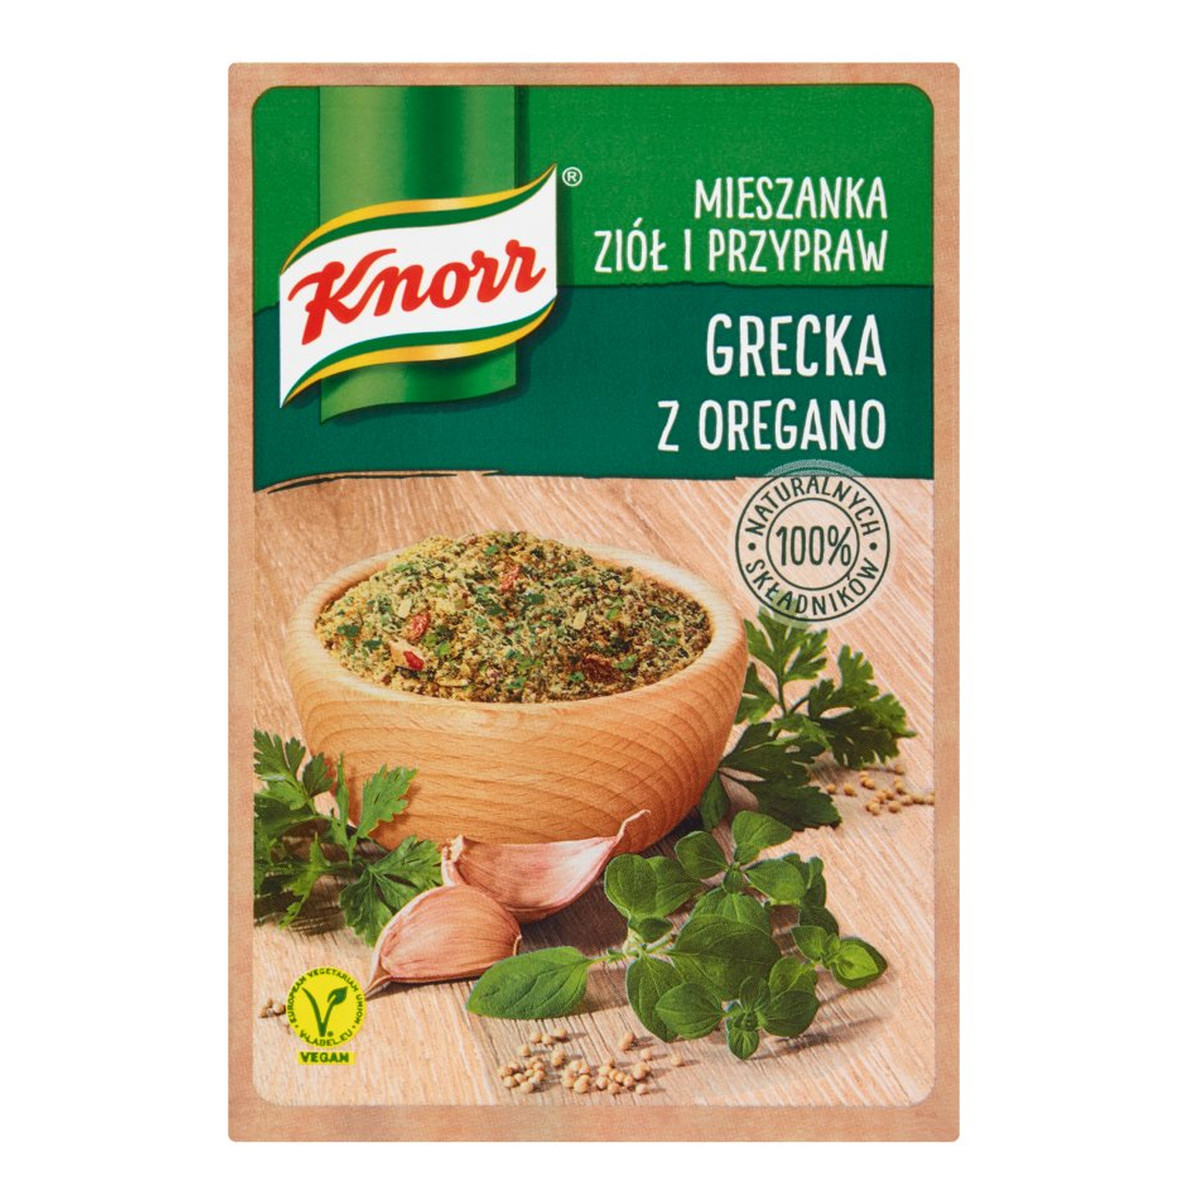 Knorr Mieszanka ziół i przypraw grecka z oregano 13g